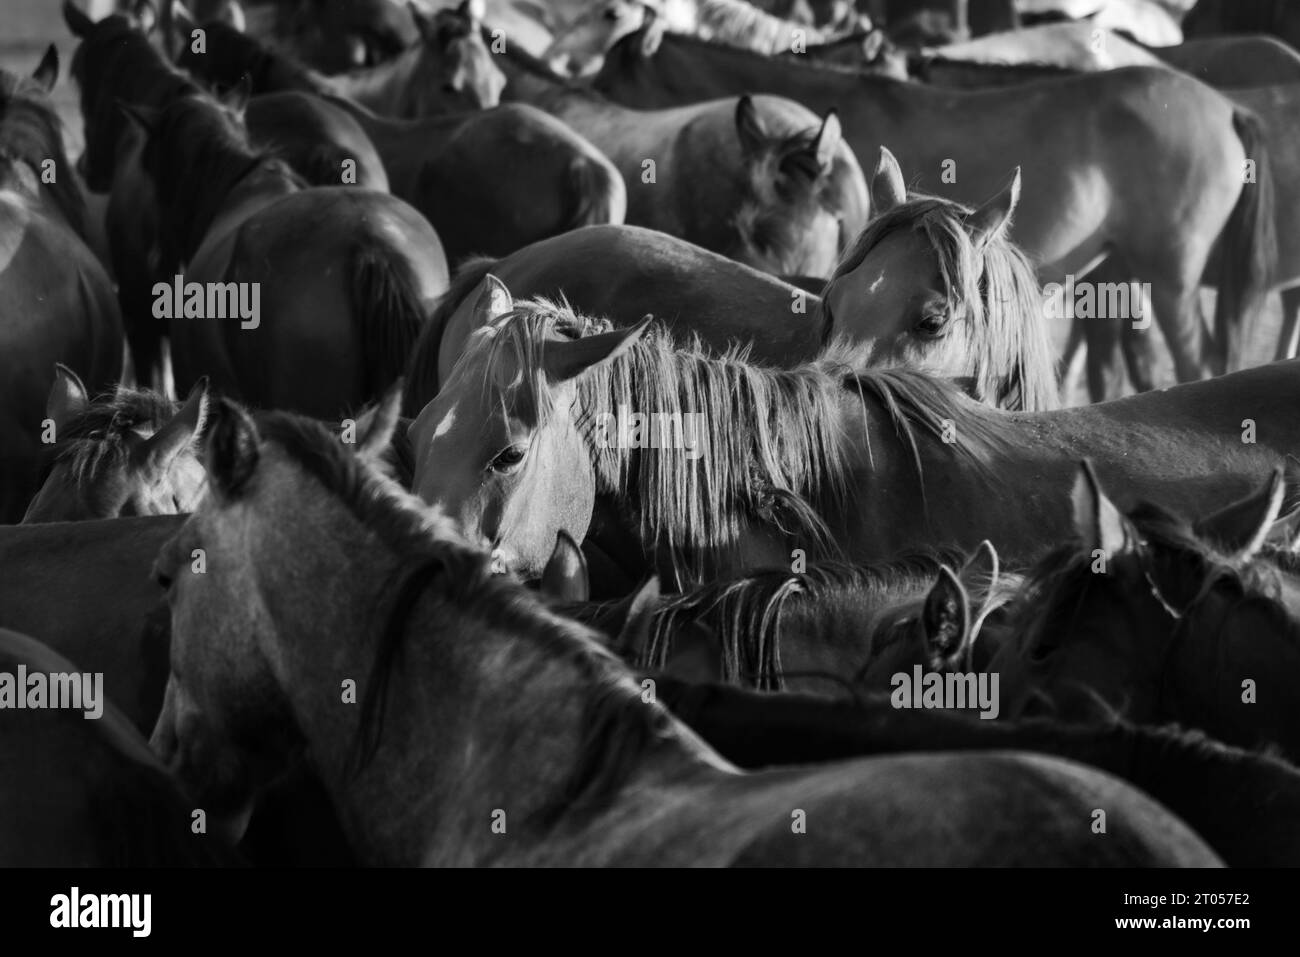 Les chevaux sauvages restent ensemble dans une ferme, gros plan, photographie en noir et blanc Banque D'Images